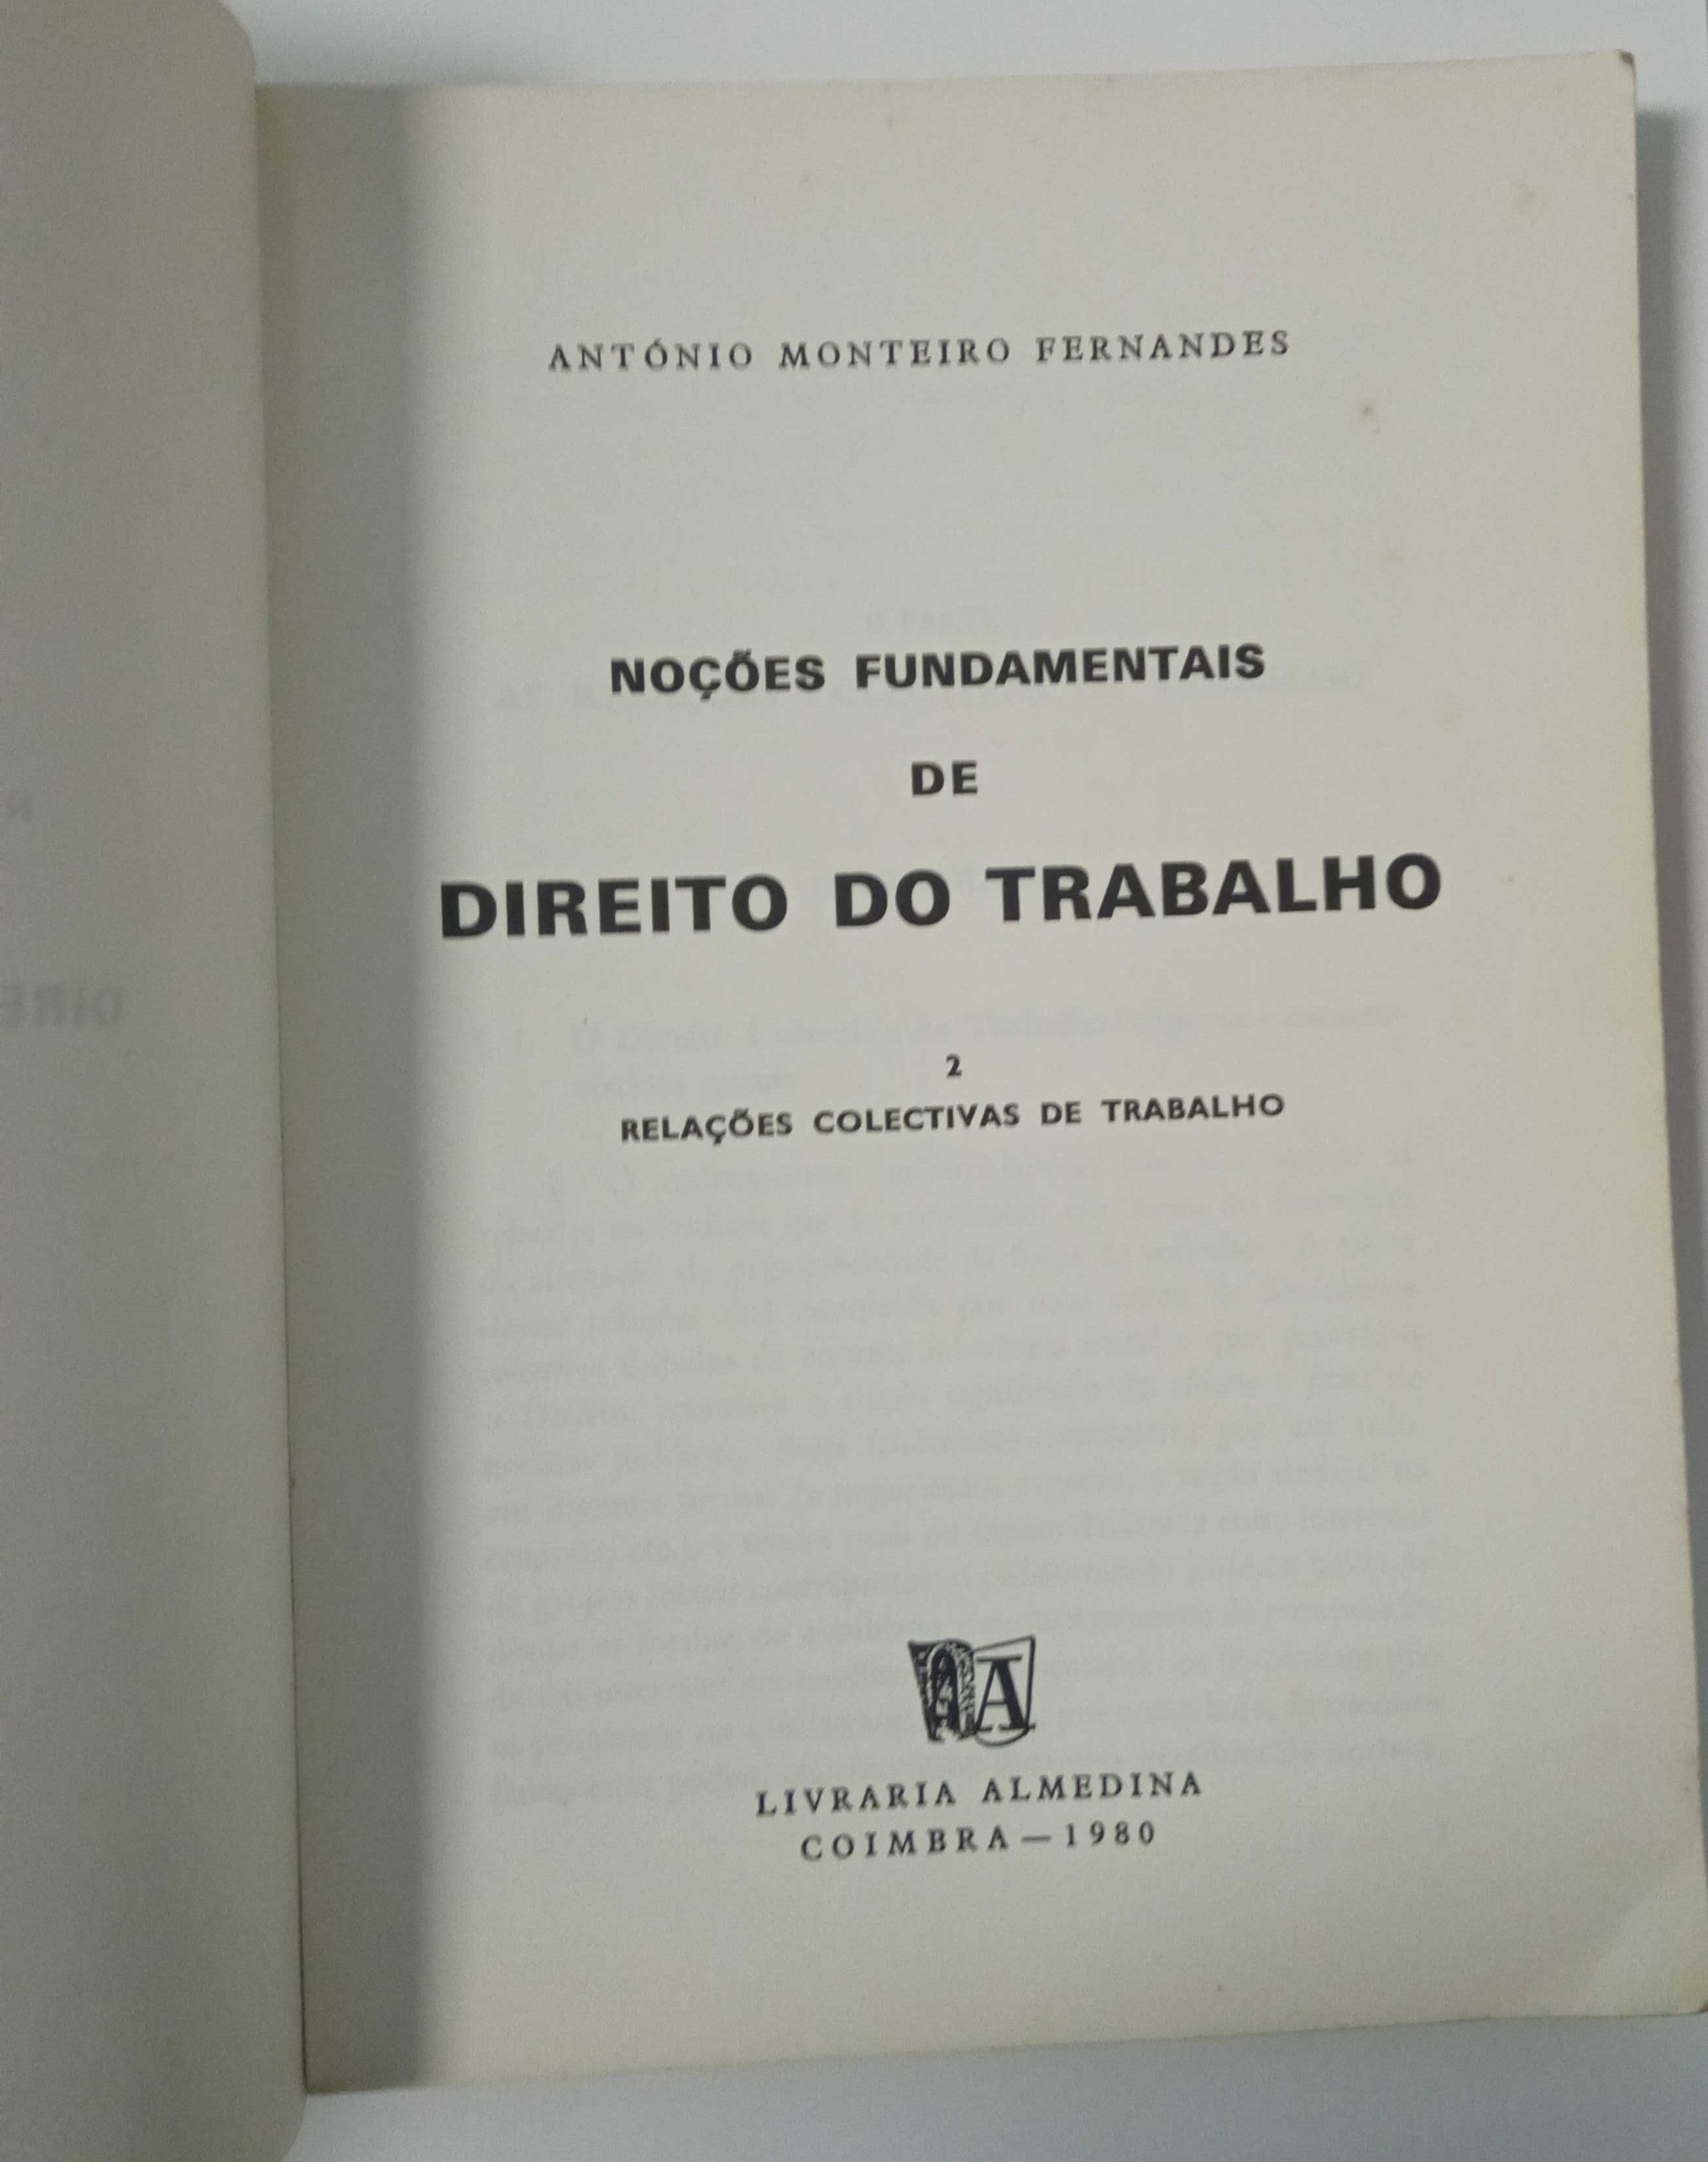 Noções fundamentais de Direito do Trabalho, de Monteiro Fernandes